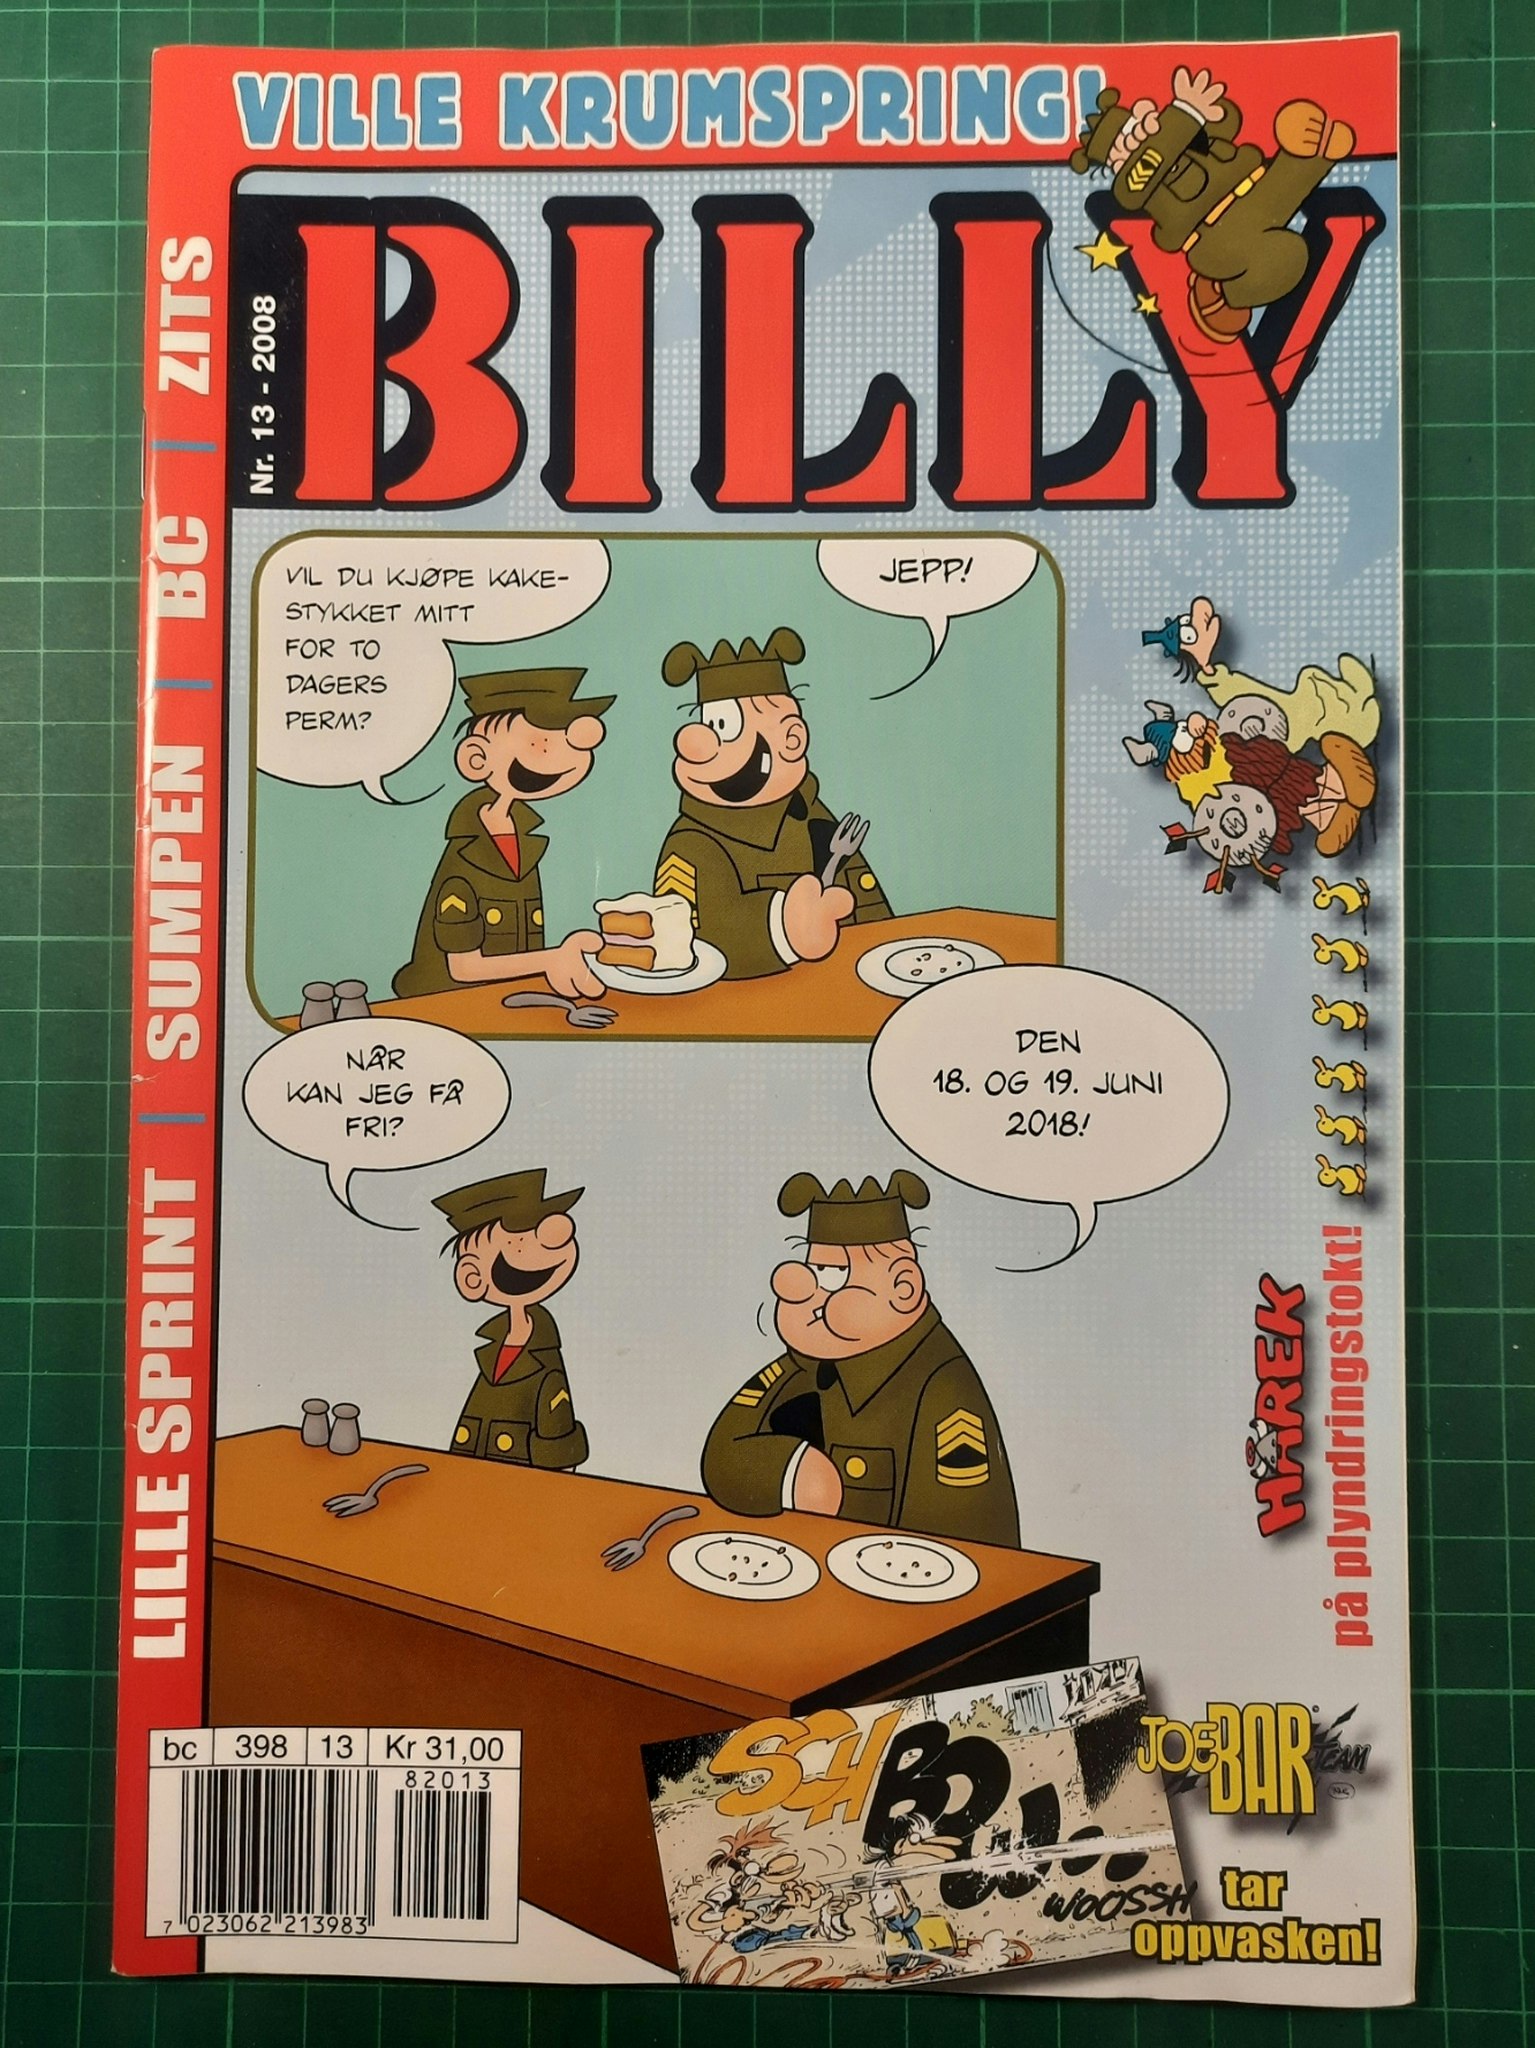 Billy 2008 - 13